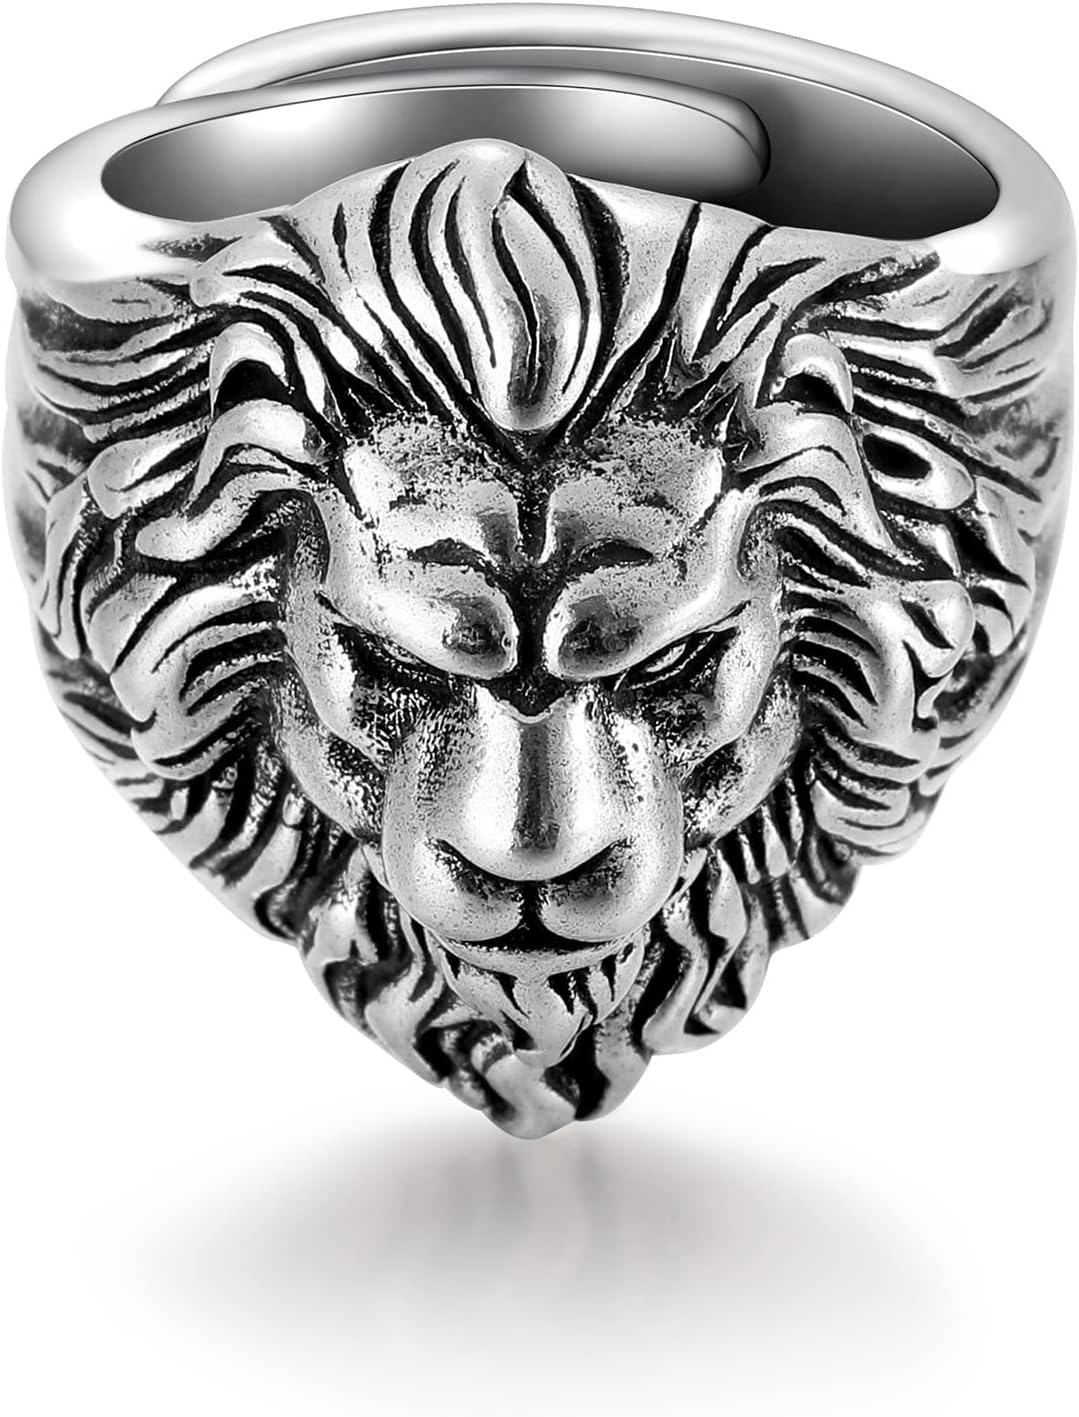 SHAMZBEST Lion Ring for Men Titanium Stainless Steel Open Ring